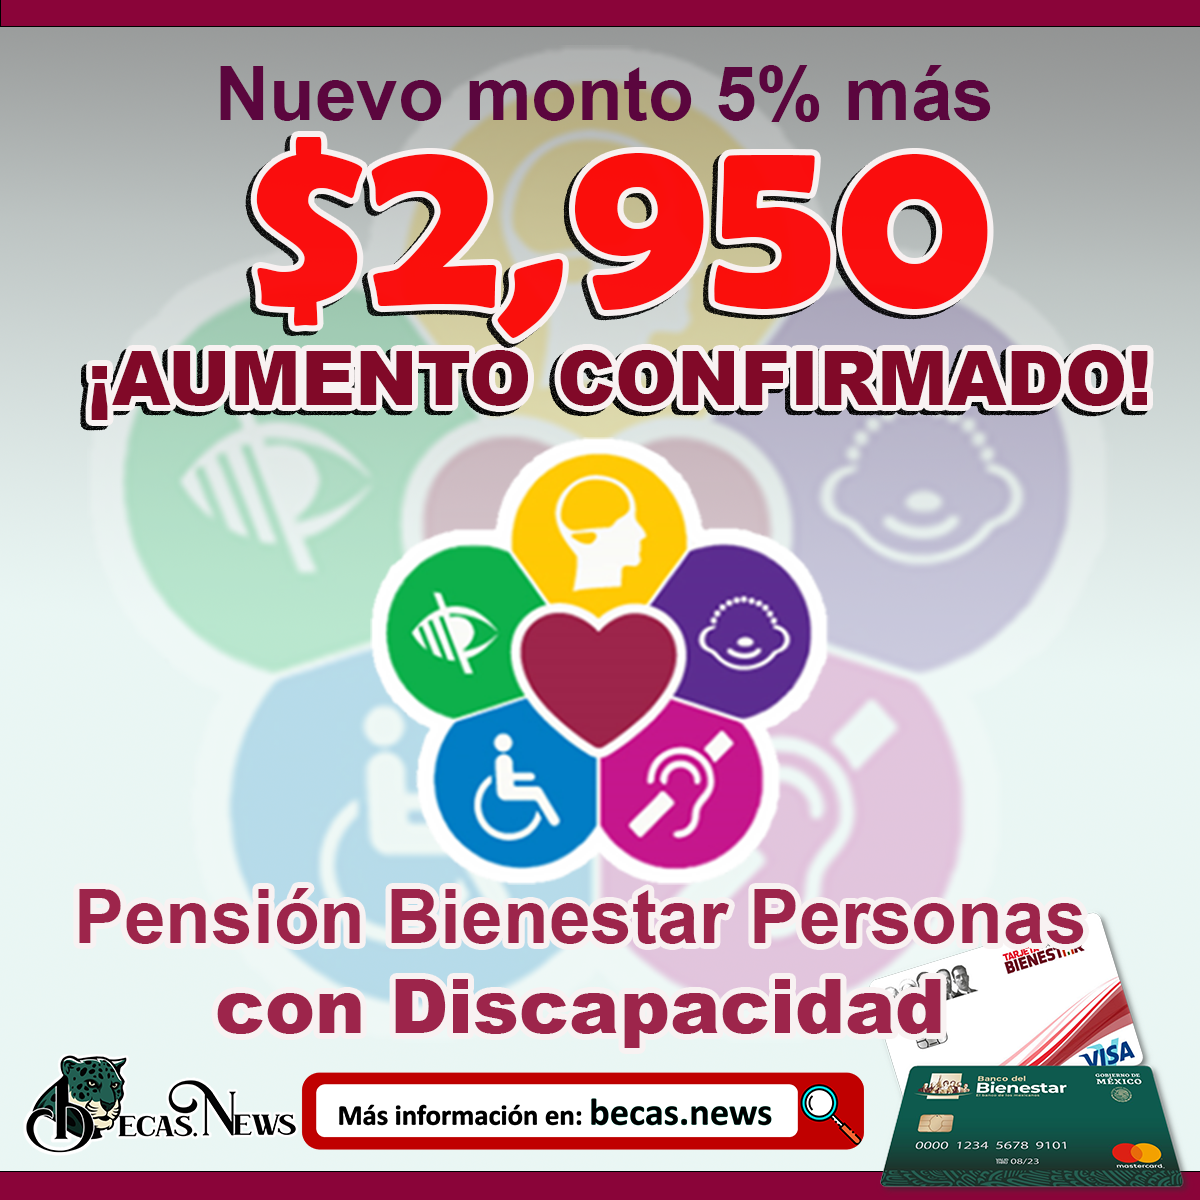 ¡AUMENTO CONFIRMADO! 5% más Pensión del Bienestar para Personas con Discapacidad